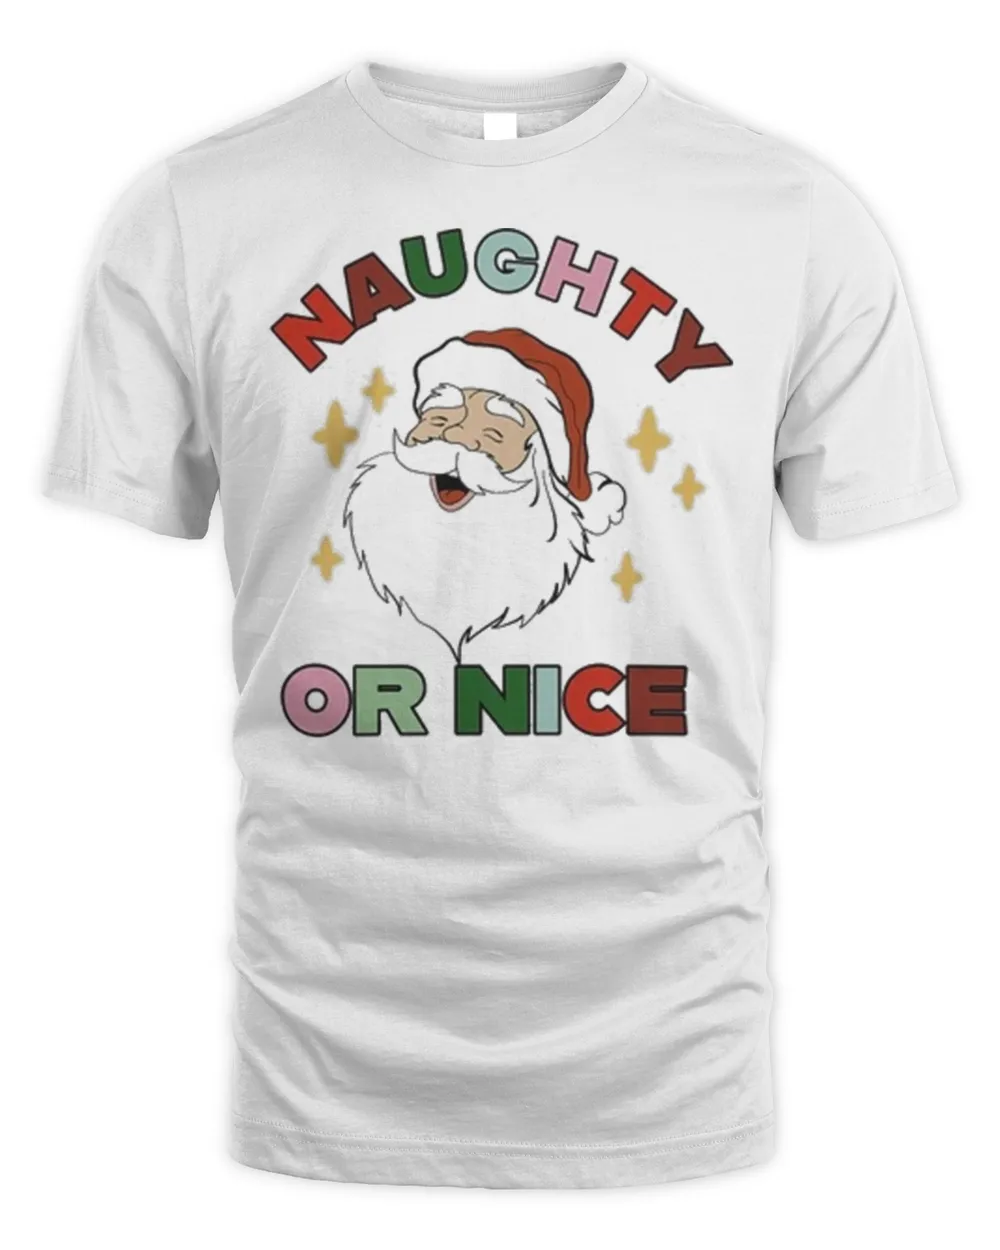 Naughty or Nice Santa Christmas Shirt